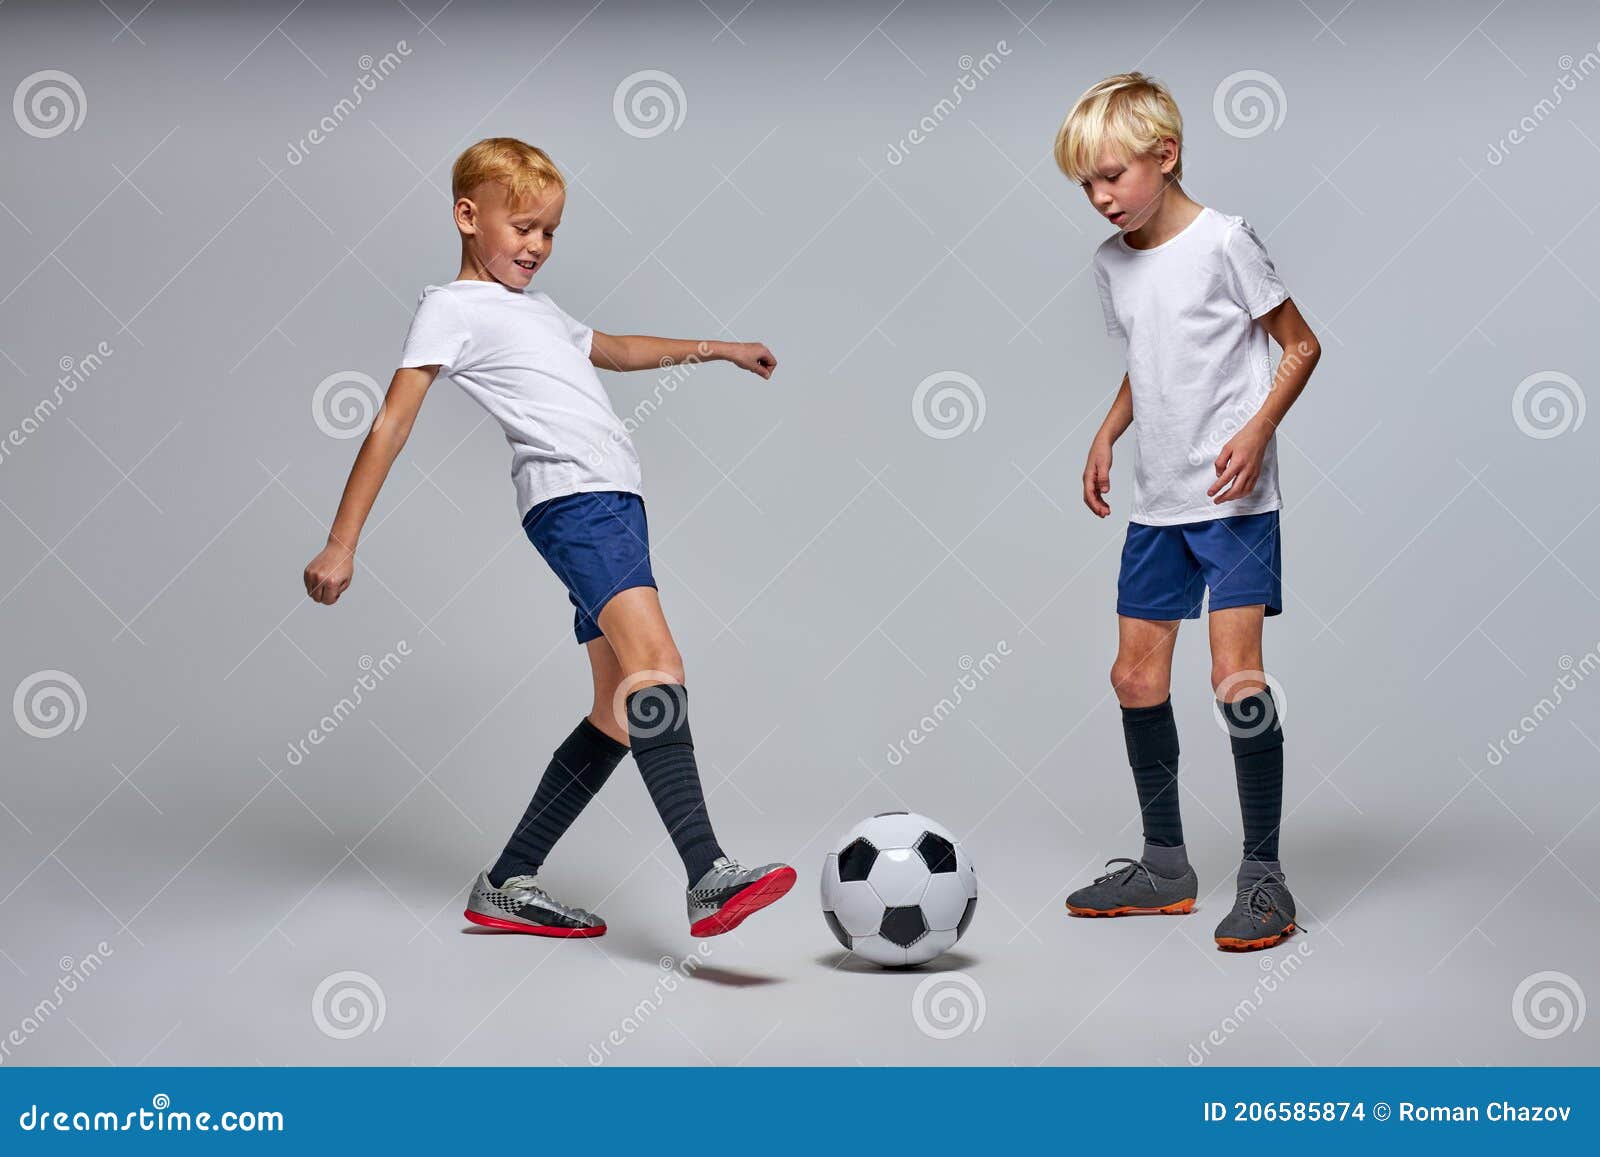 Los Niños Juegan Al Fútbol Aislado En El Estudio Foto de archivo - Imagen de juego: 206585874